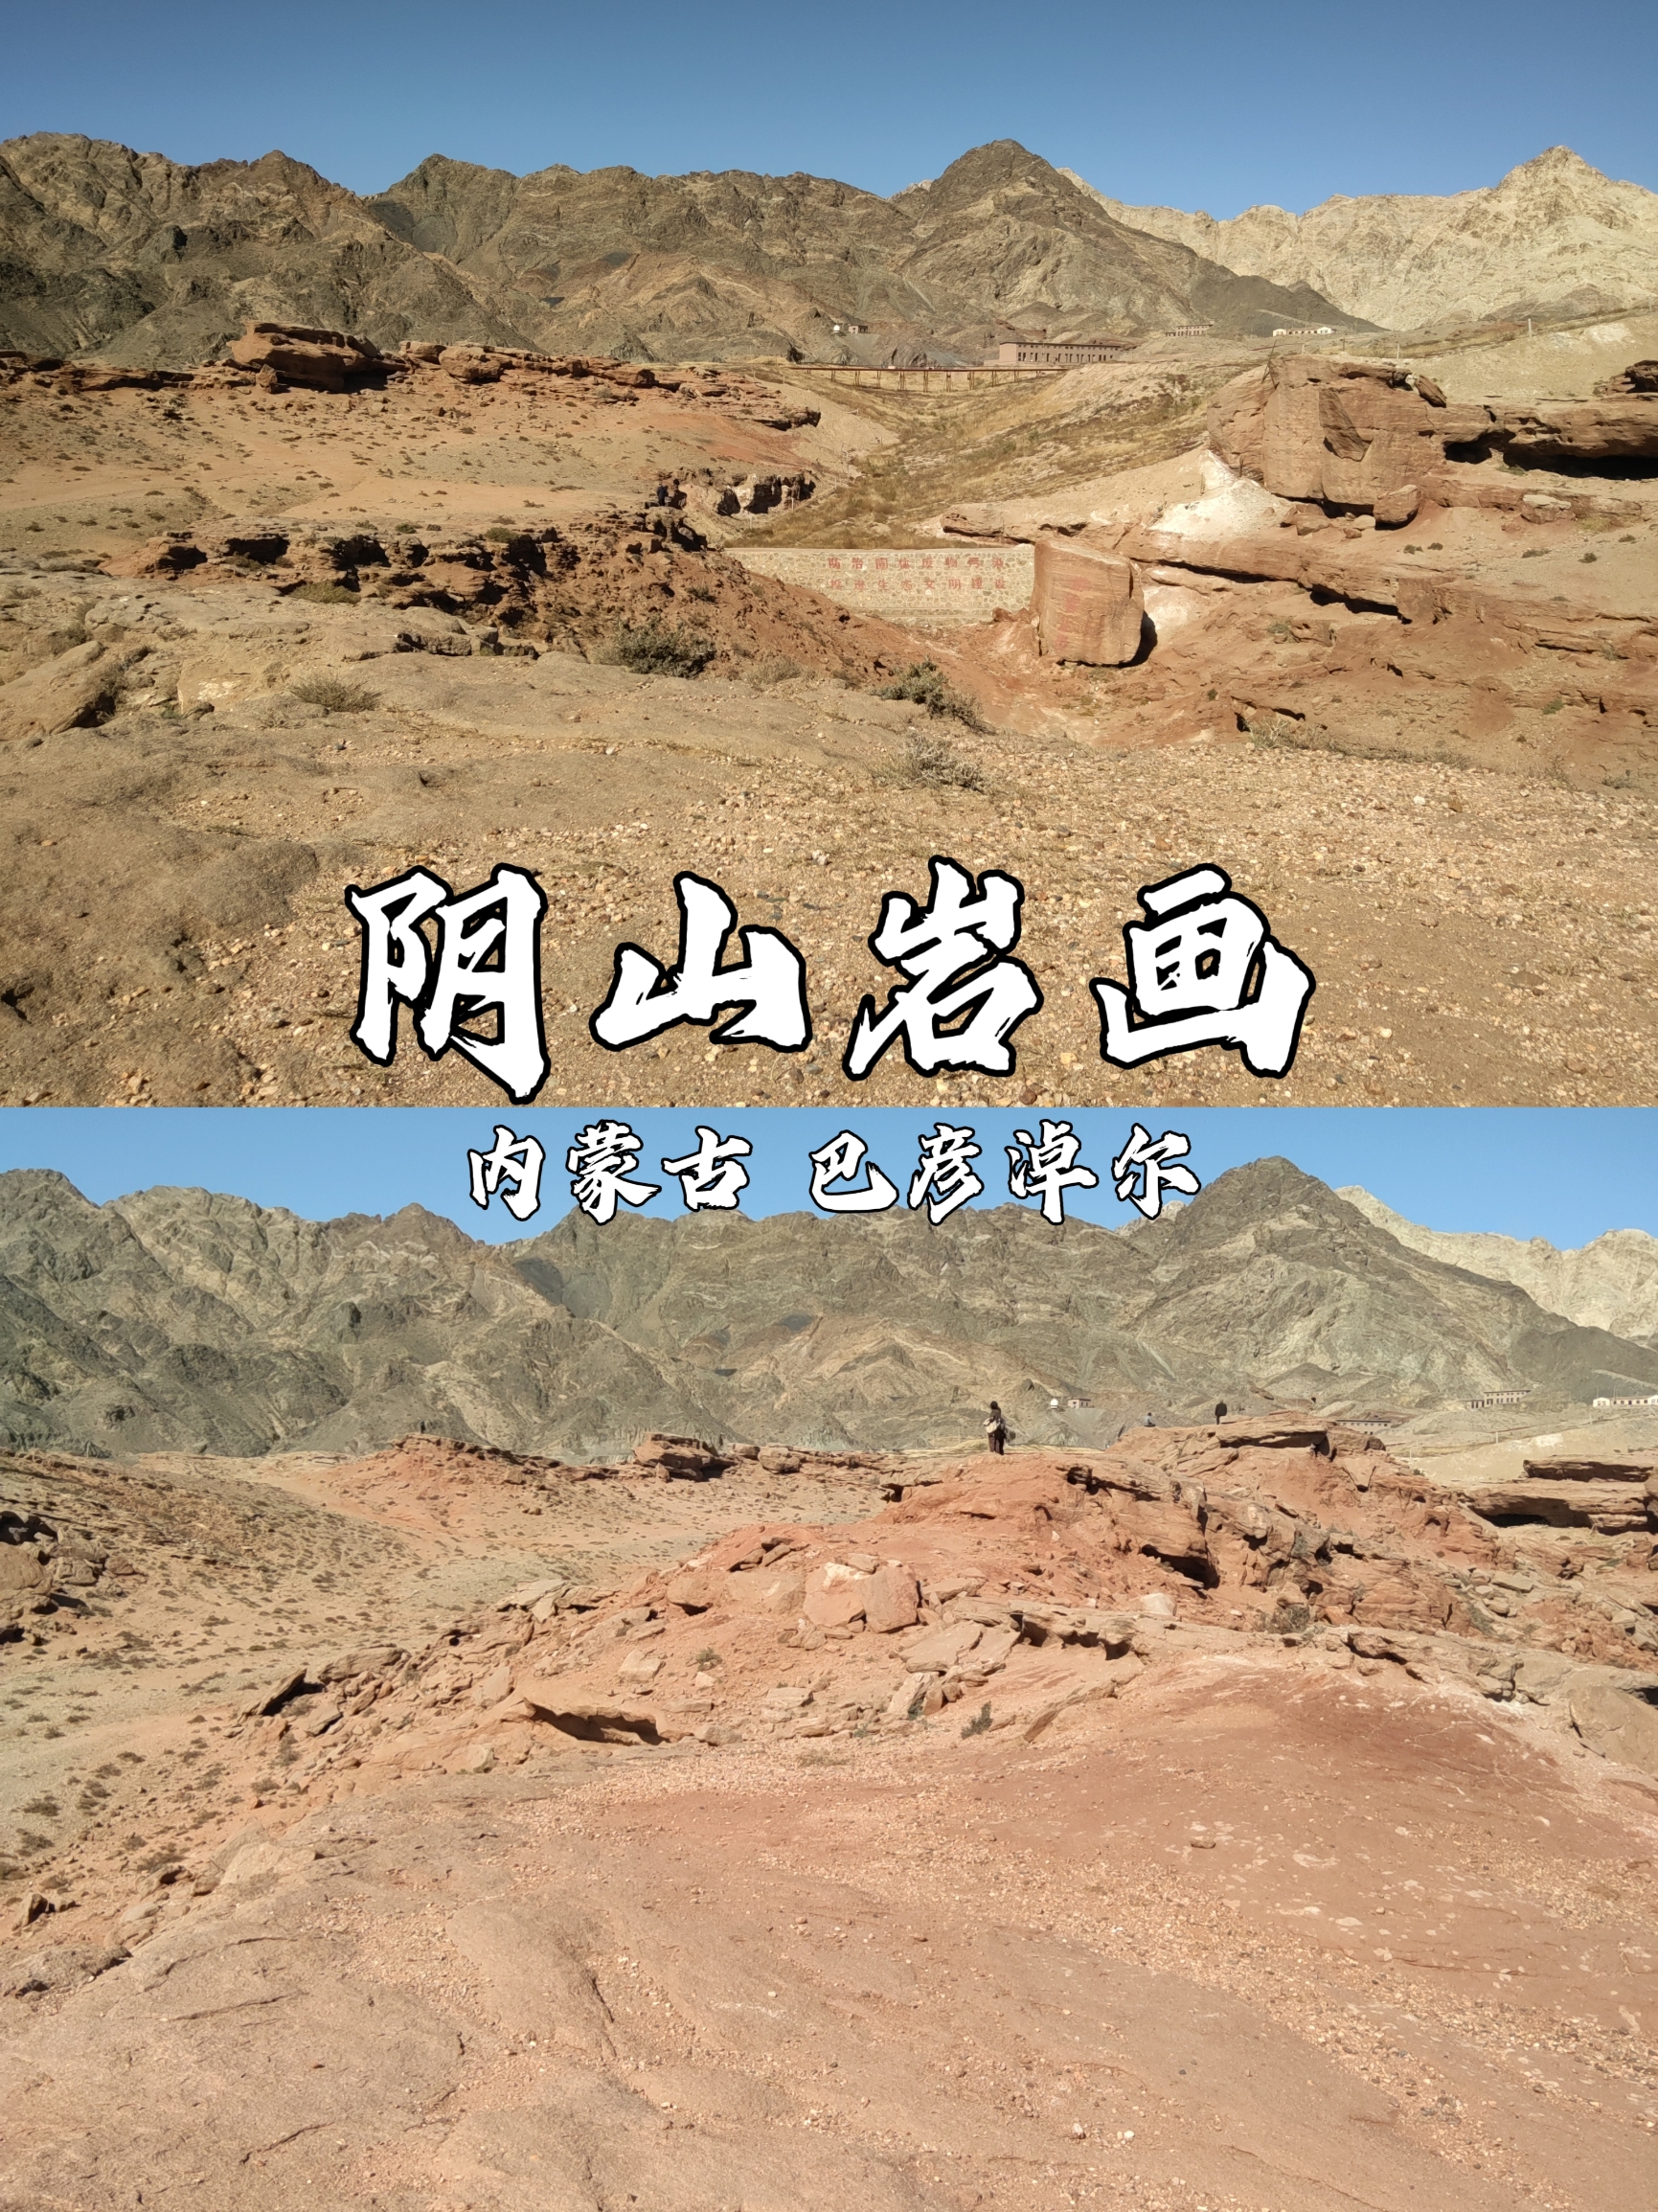 河套平原阴山岩画⛰️|内蒙古小众探秘文化景观